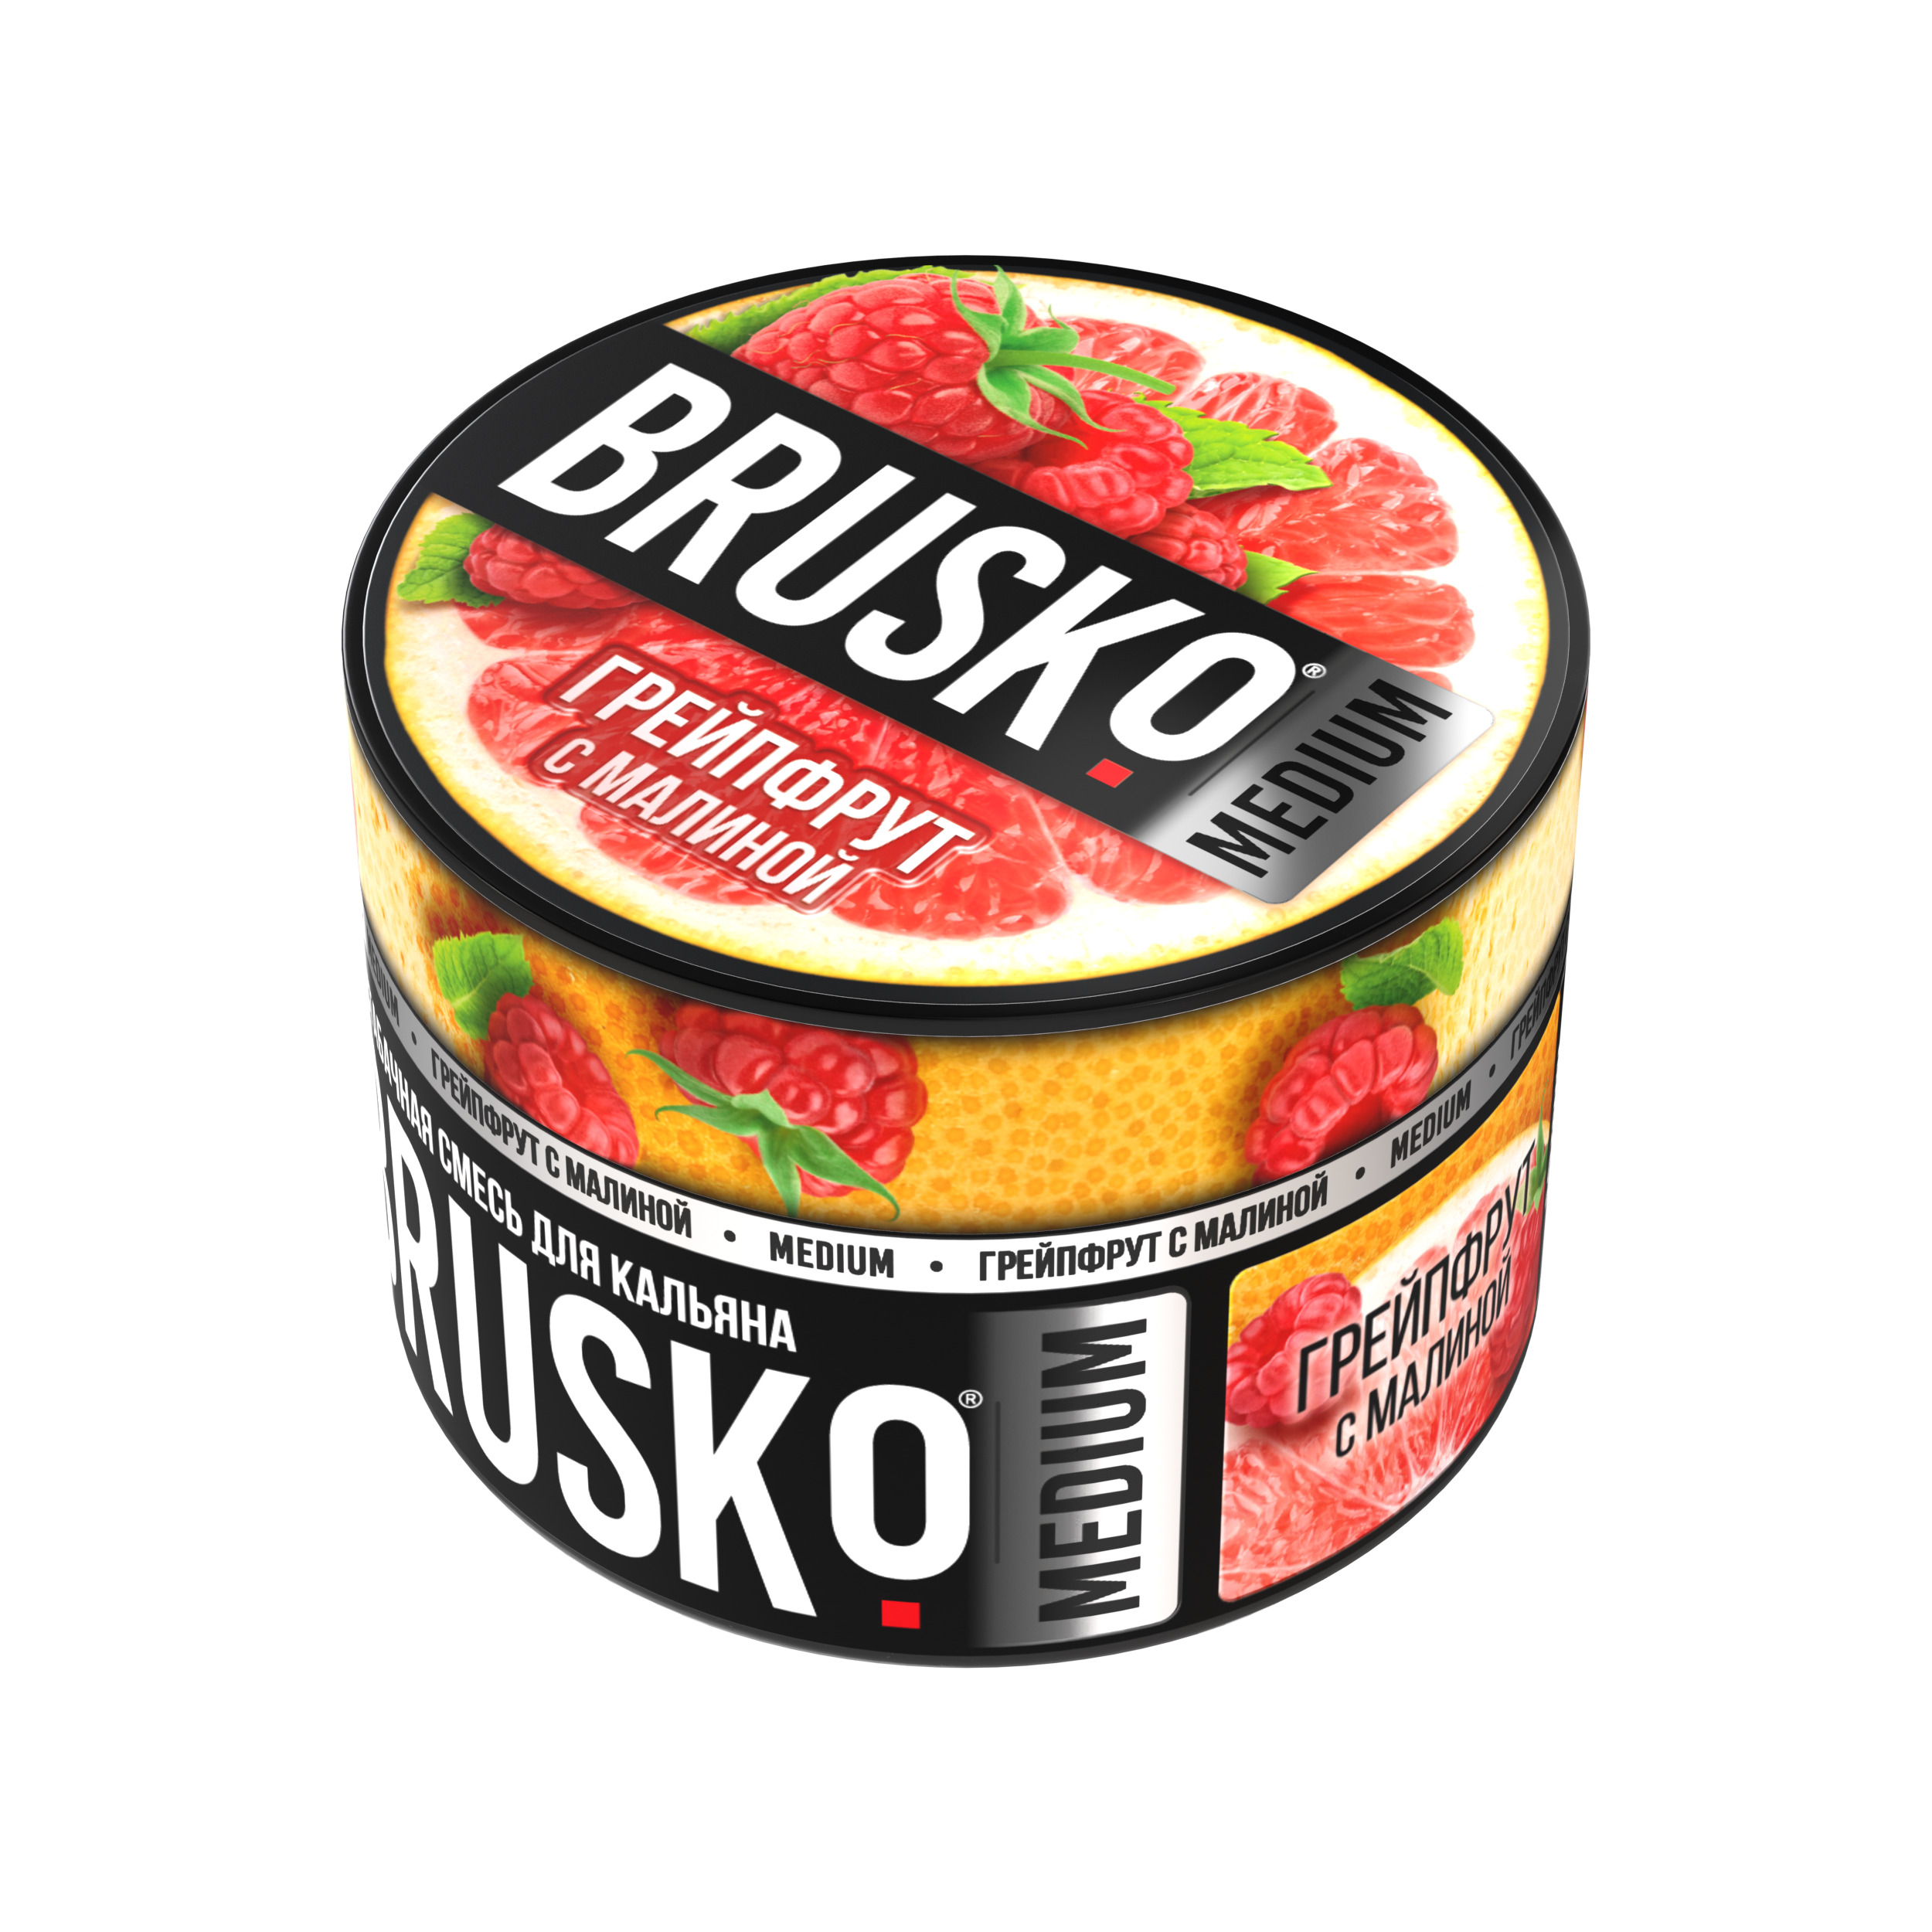 Бестабачная смесь для кальяна BRUSKO, 50 г, Грейпфрут с малиной, Medium (М)